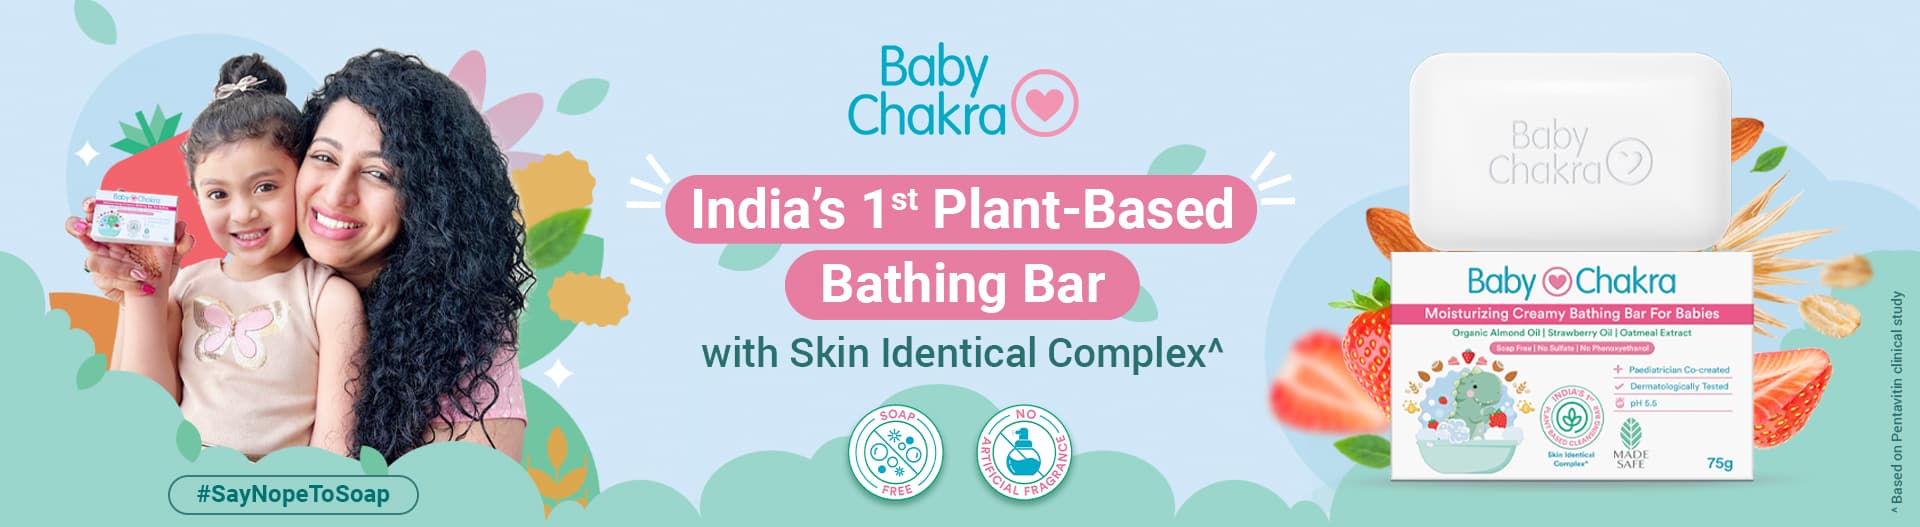 BabyChakra Moisturizing Creamy Bathing Bar Pack of 2